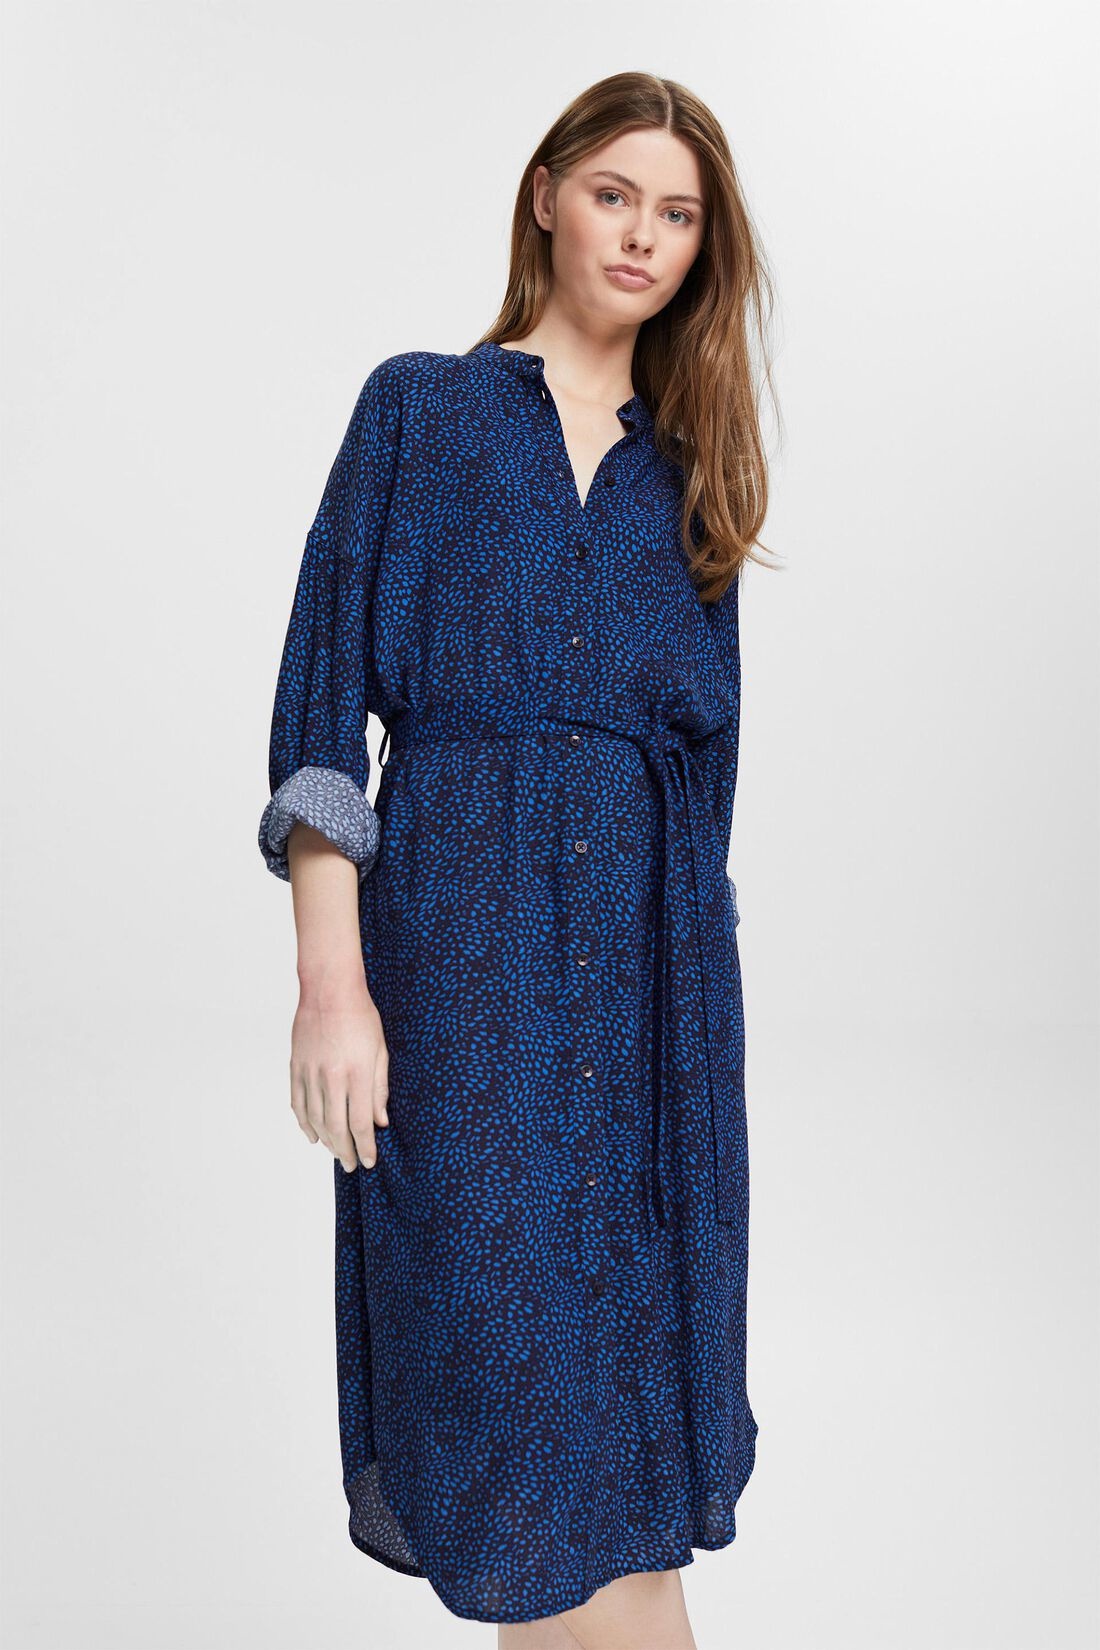 ESPRIT Gemustertes Kleid mit Gürtel - New Navy / Blau | - Cotton Blues